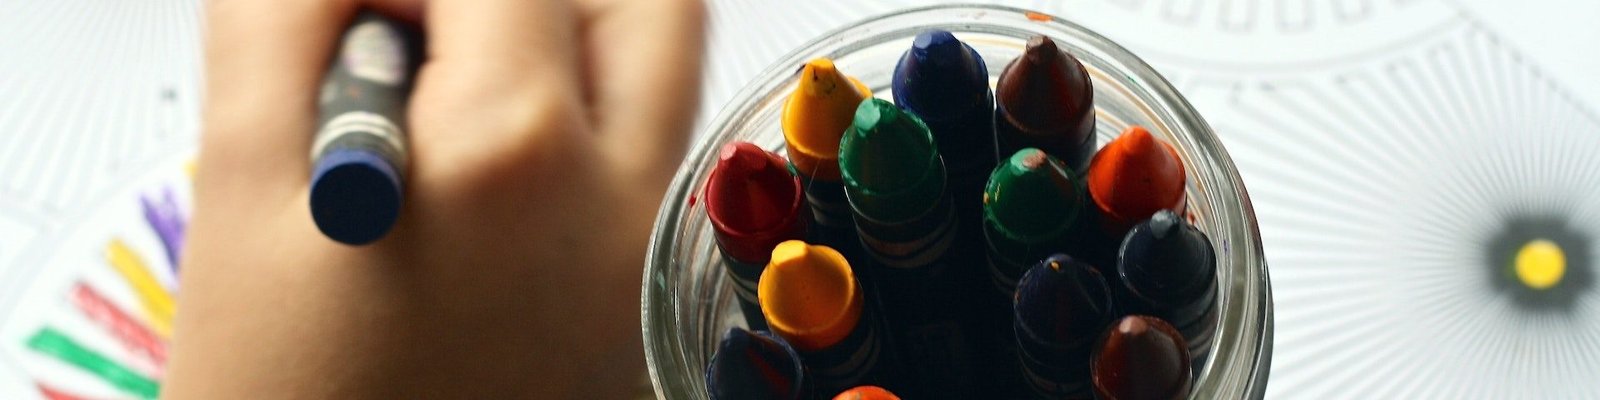 Plano de aula cores educação infantil 4 anos